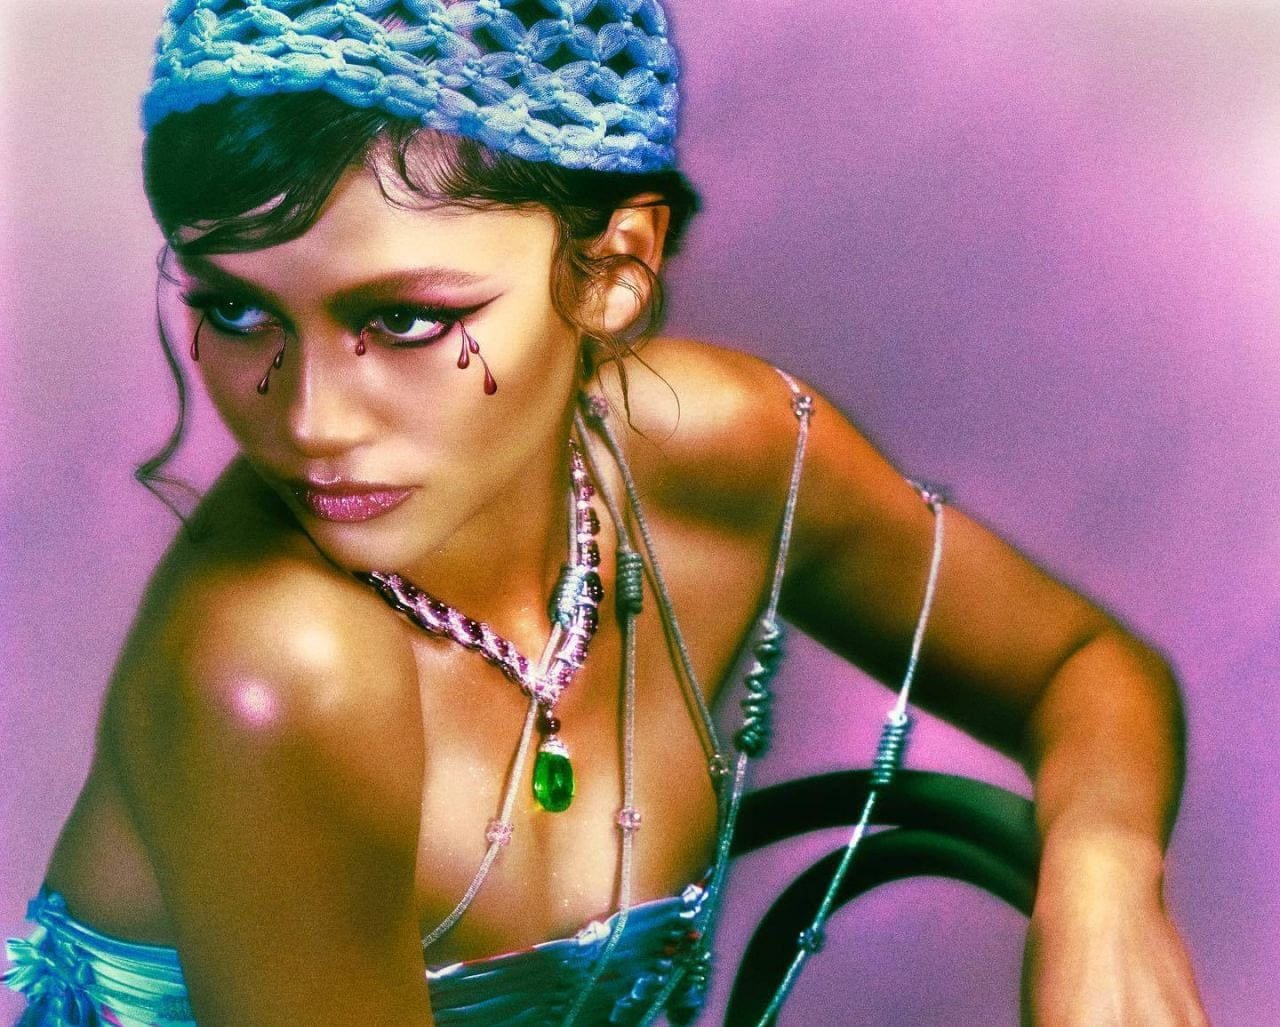 “Горячо, как в Коста-Рике”: Мировая звезда Зендая позирует для Vogue